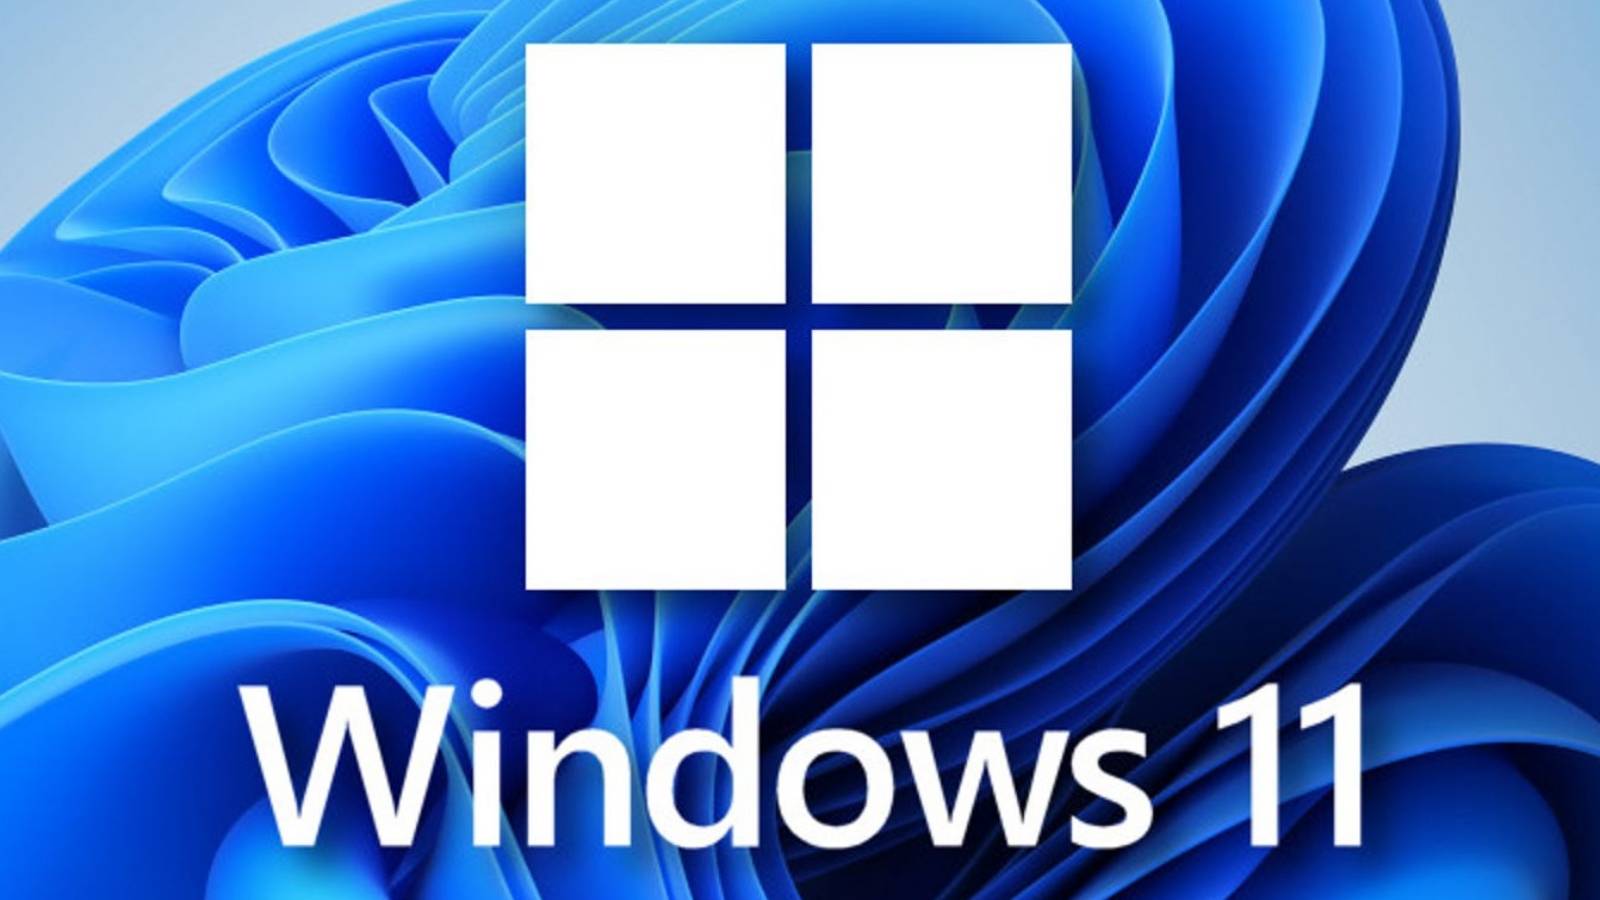 Microsoft Rezolva ENERVANTA problema Windows 11 chrome